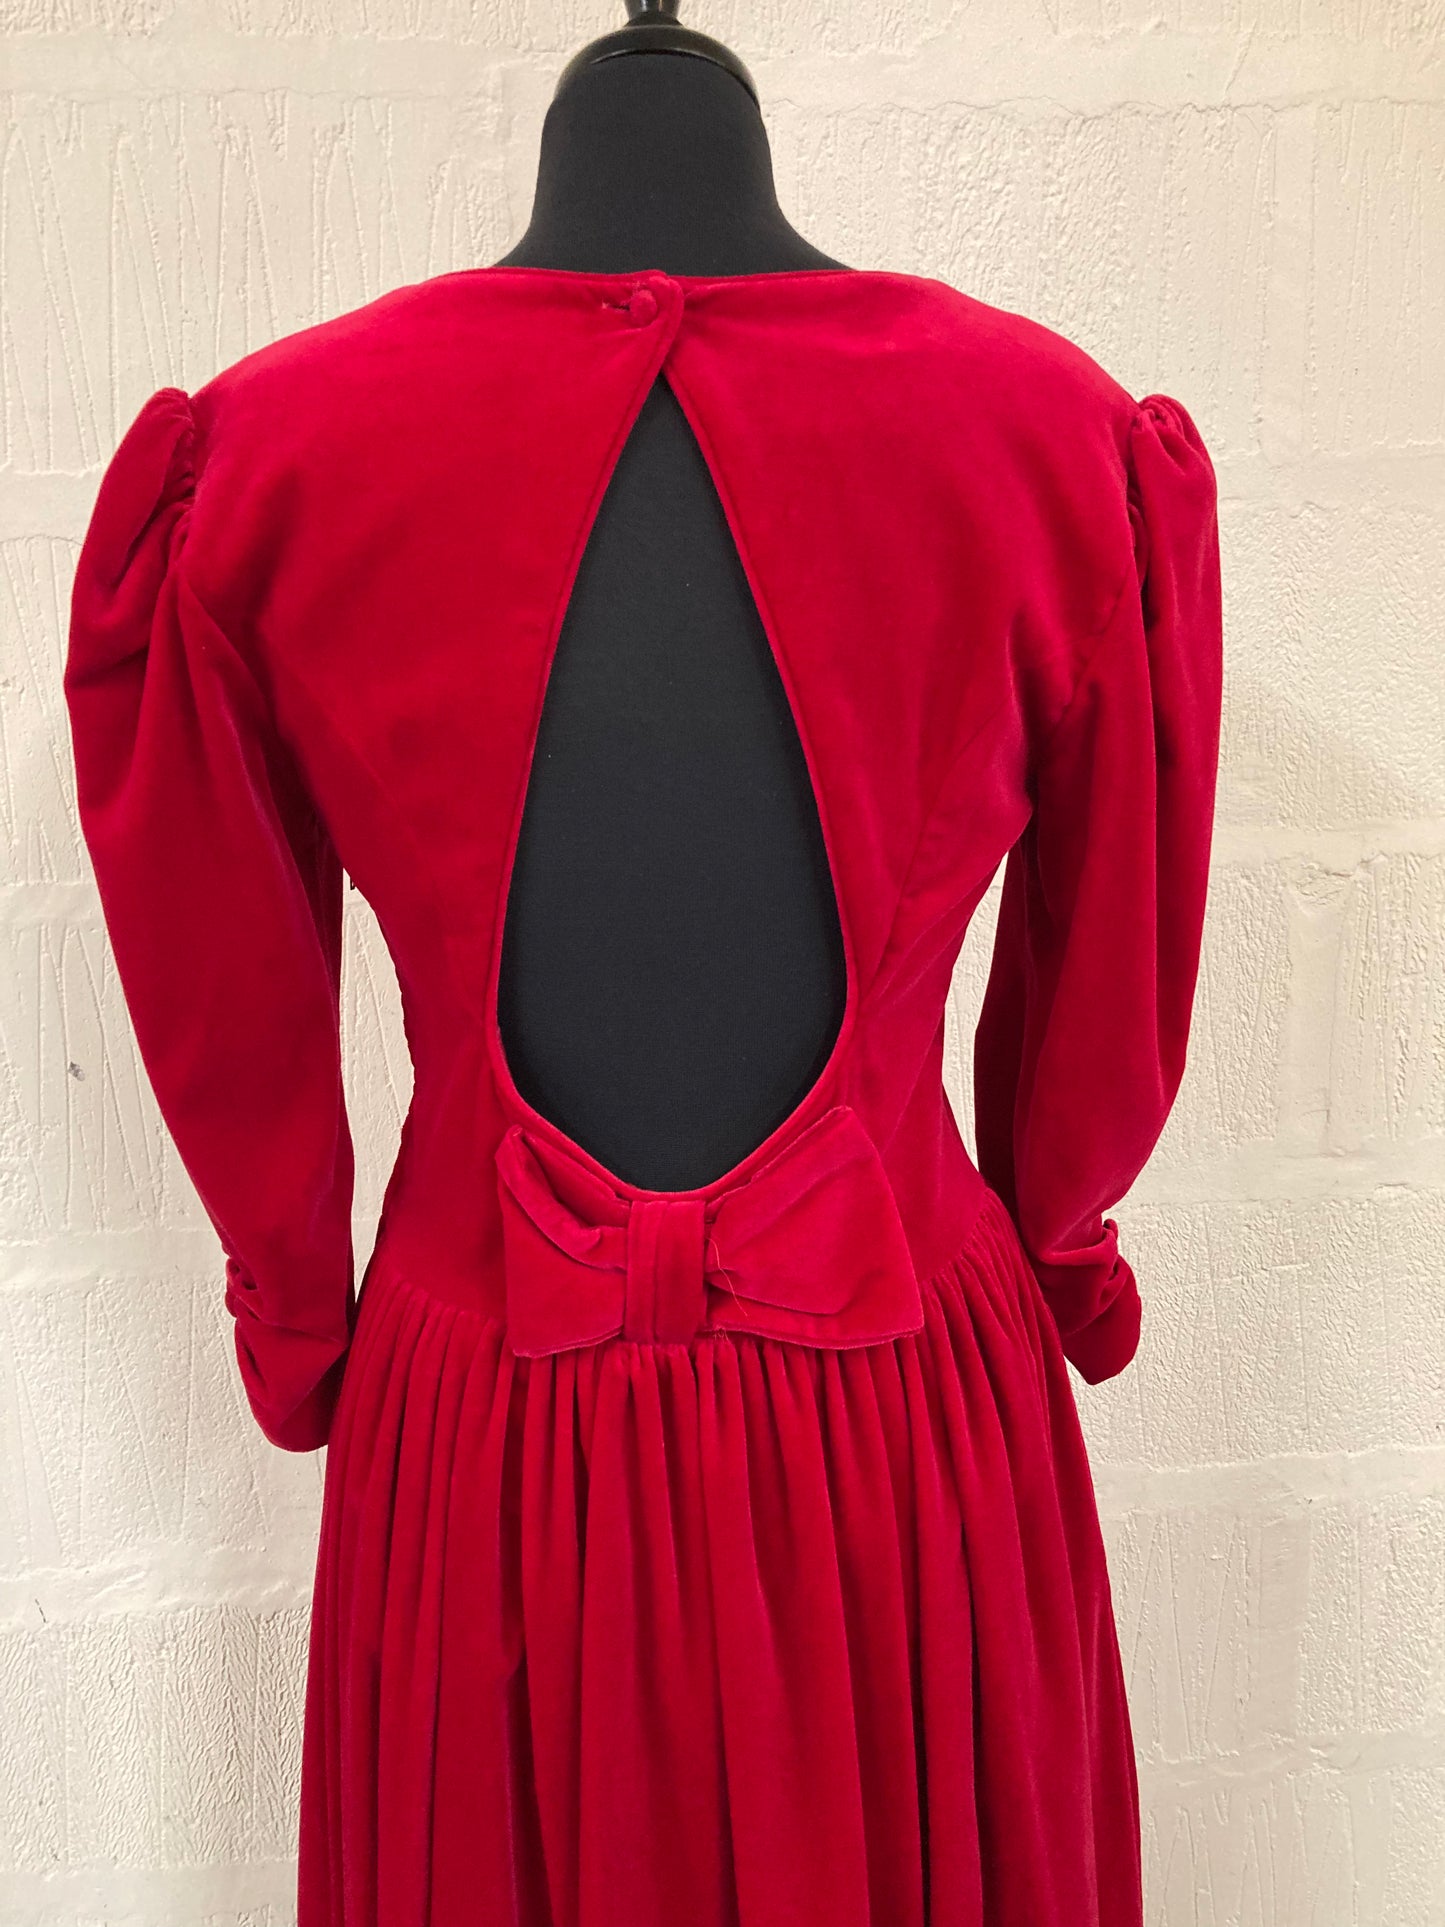 Vintage 1980s Red Velvet Laura Ashley Dress Size 14